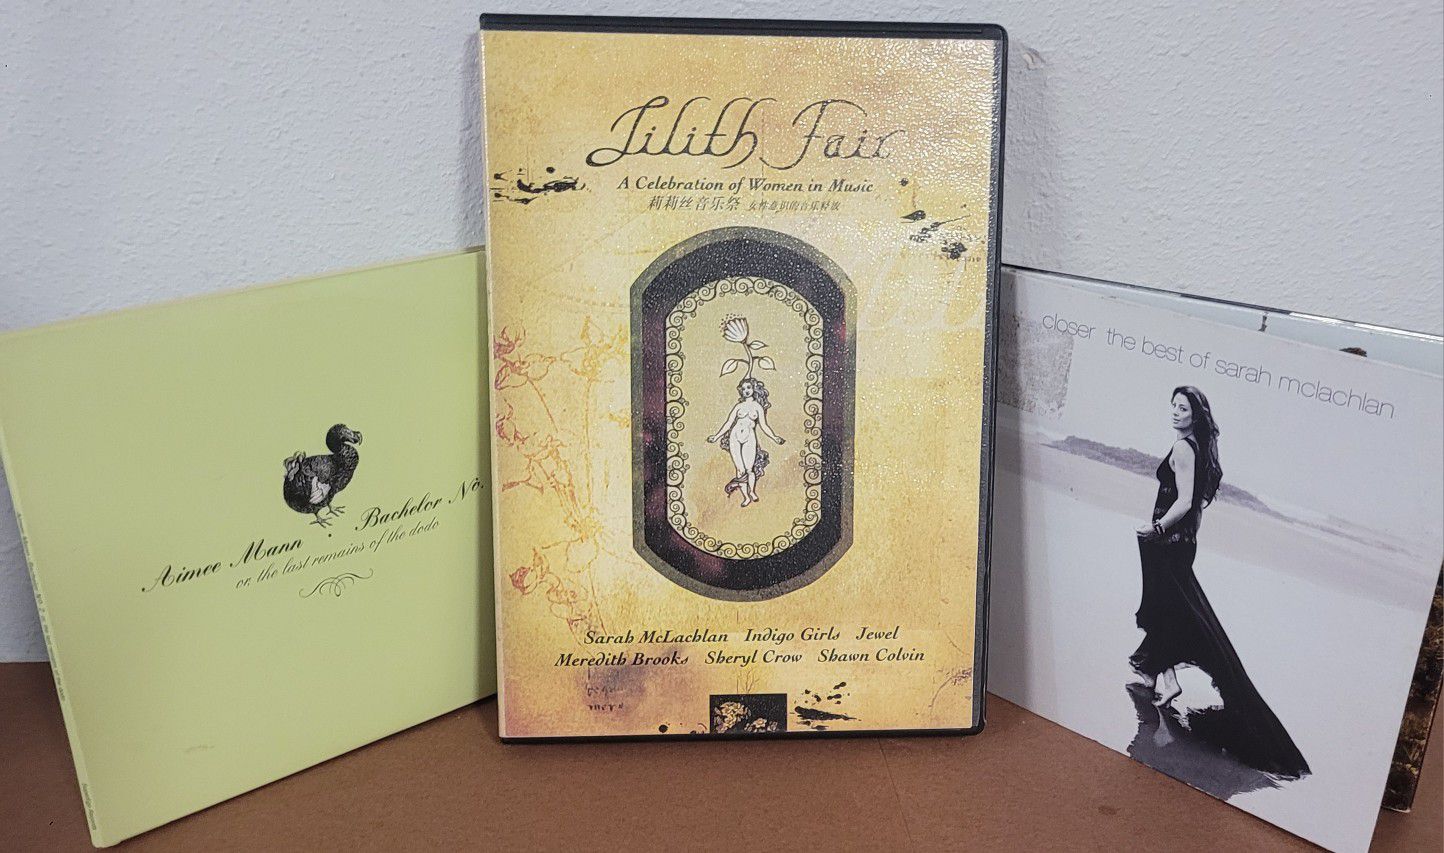 Lilith Fair DVD [Chinese] + Sarah McLachlan Greatest Hits CD + Aimee Man CD